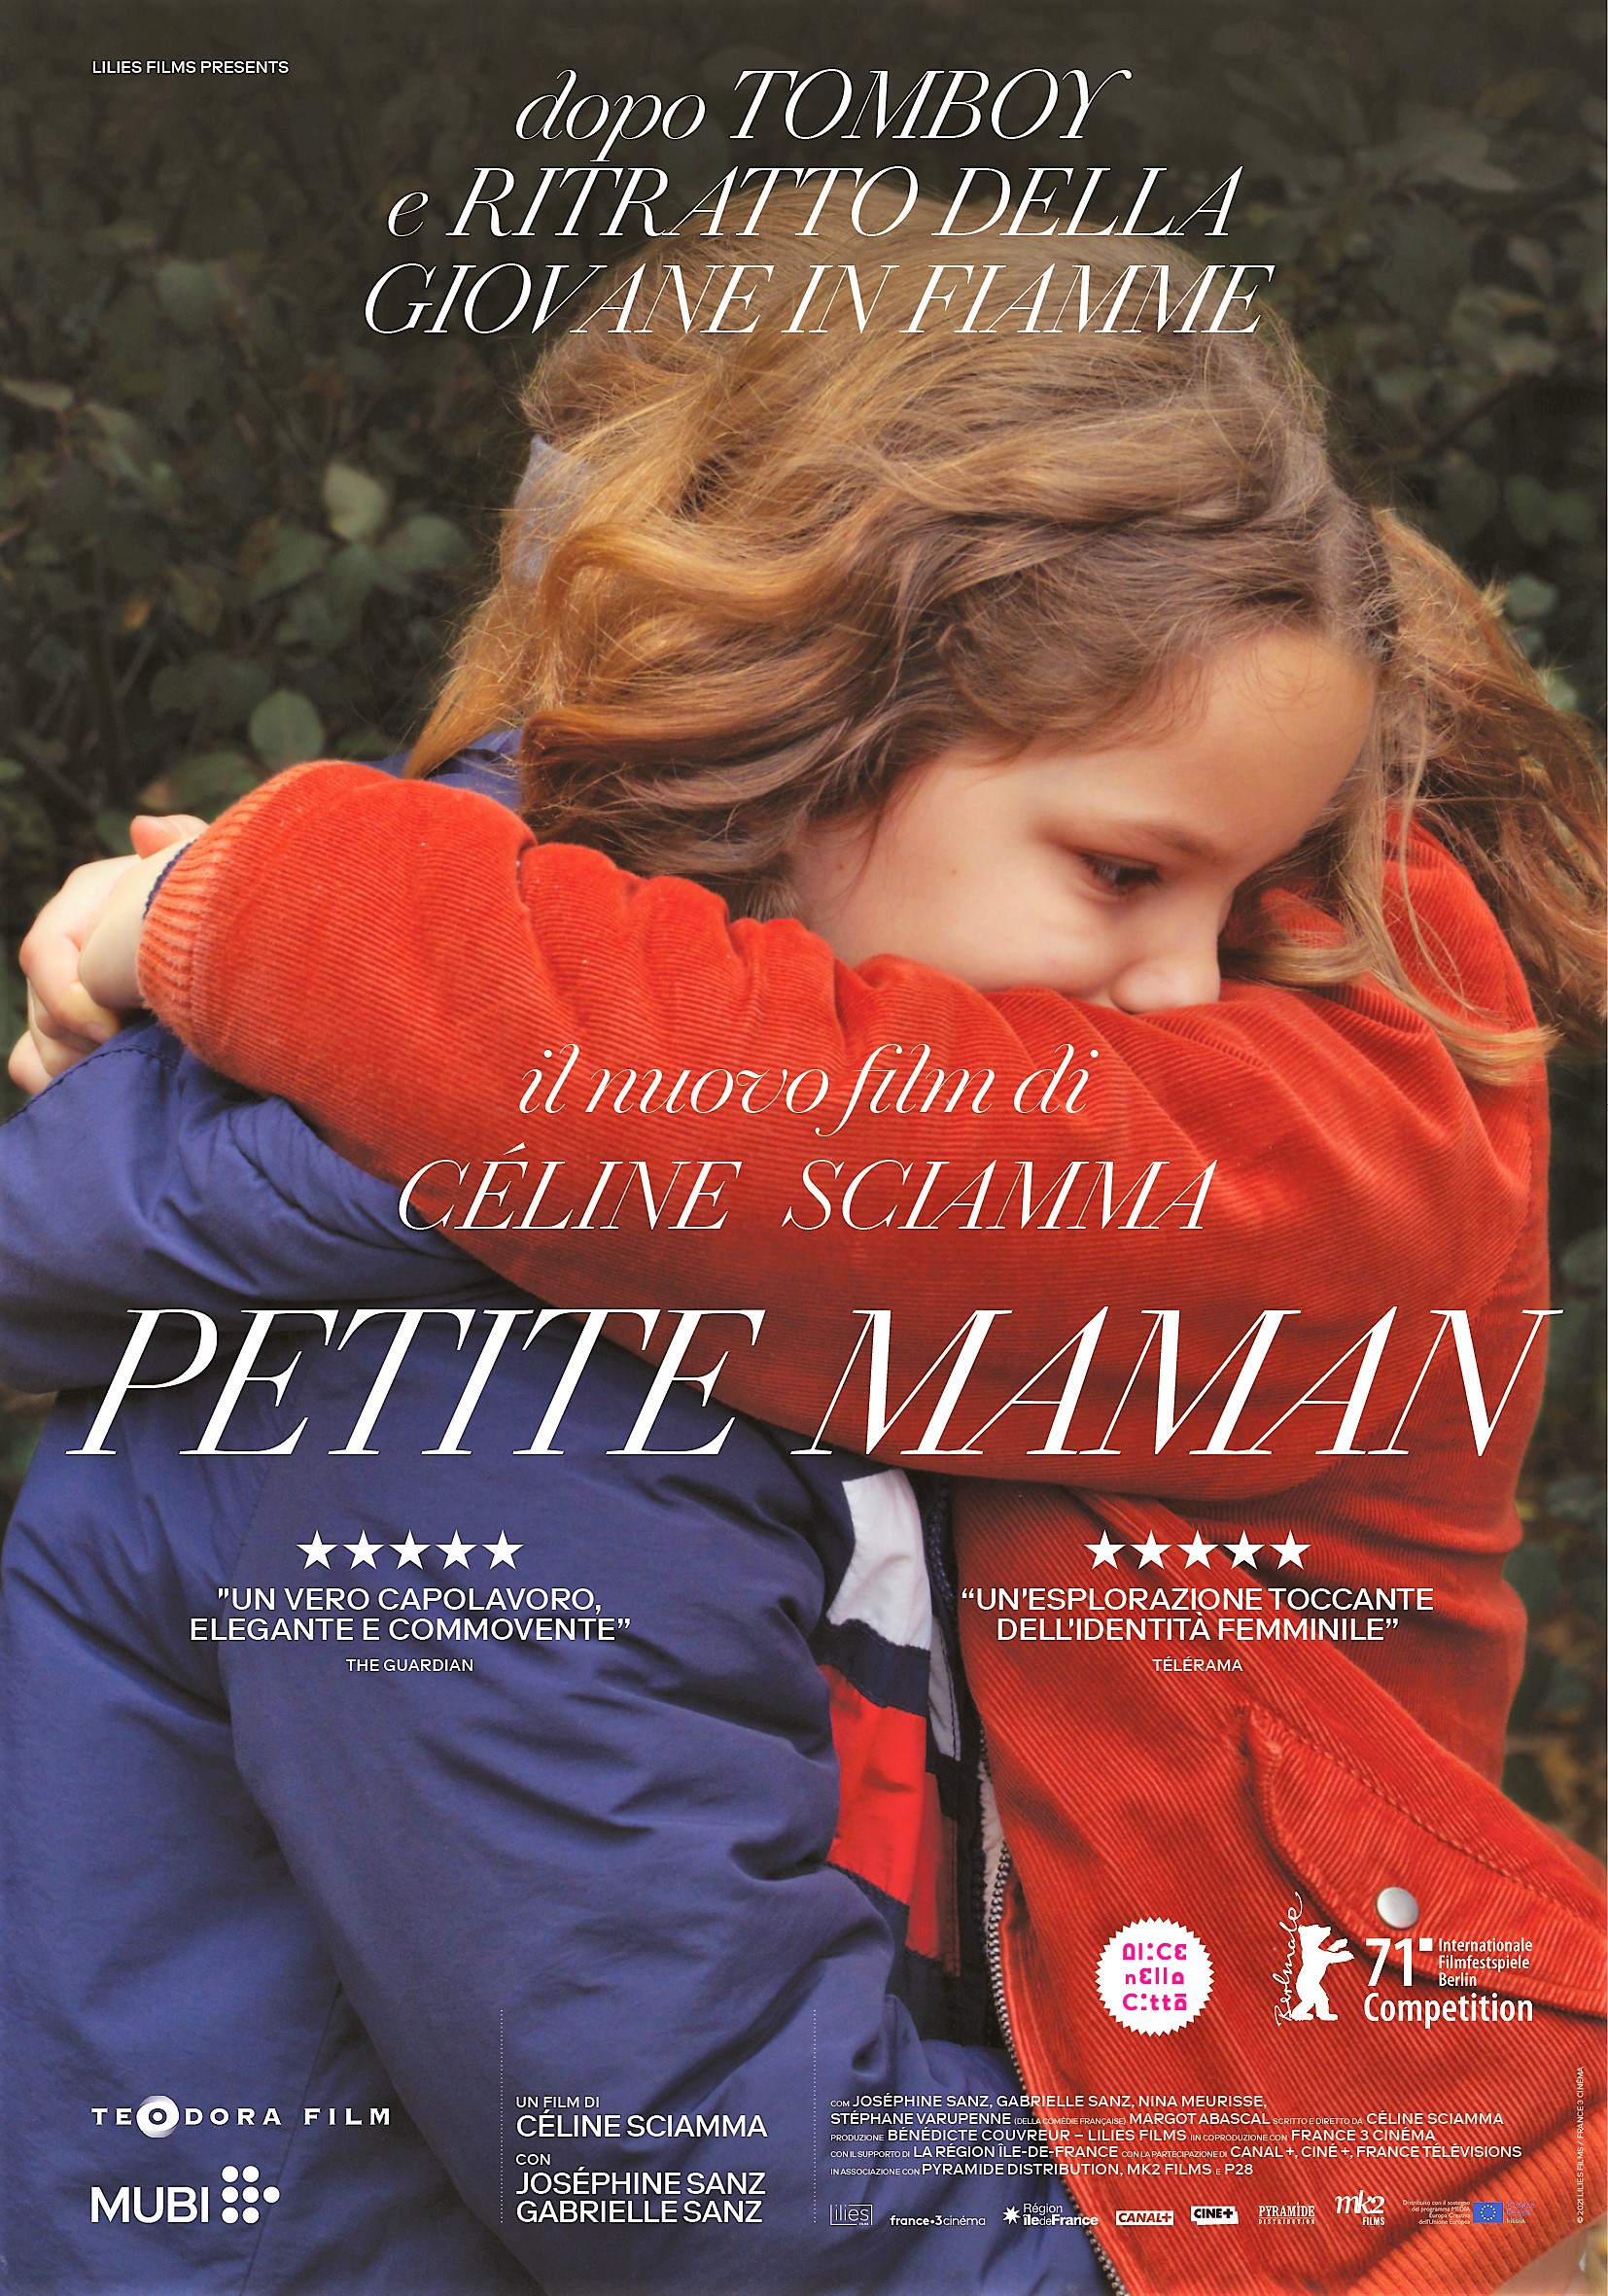 Petite maman – ACEC Toscana